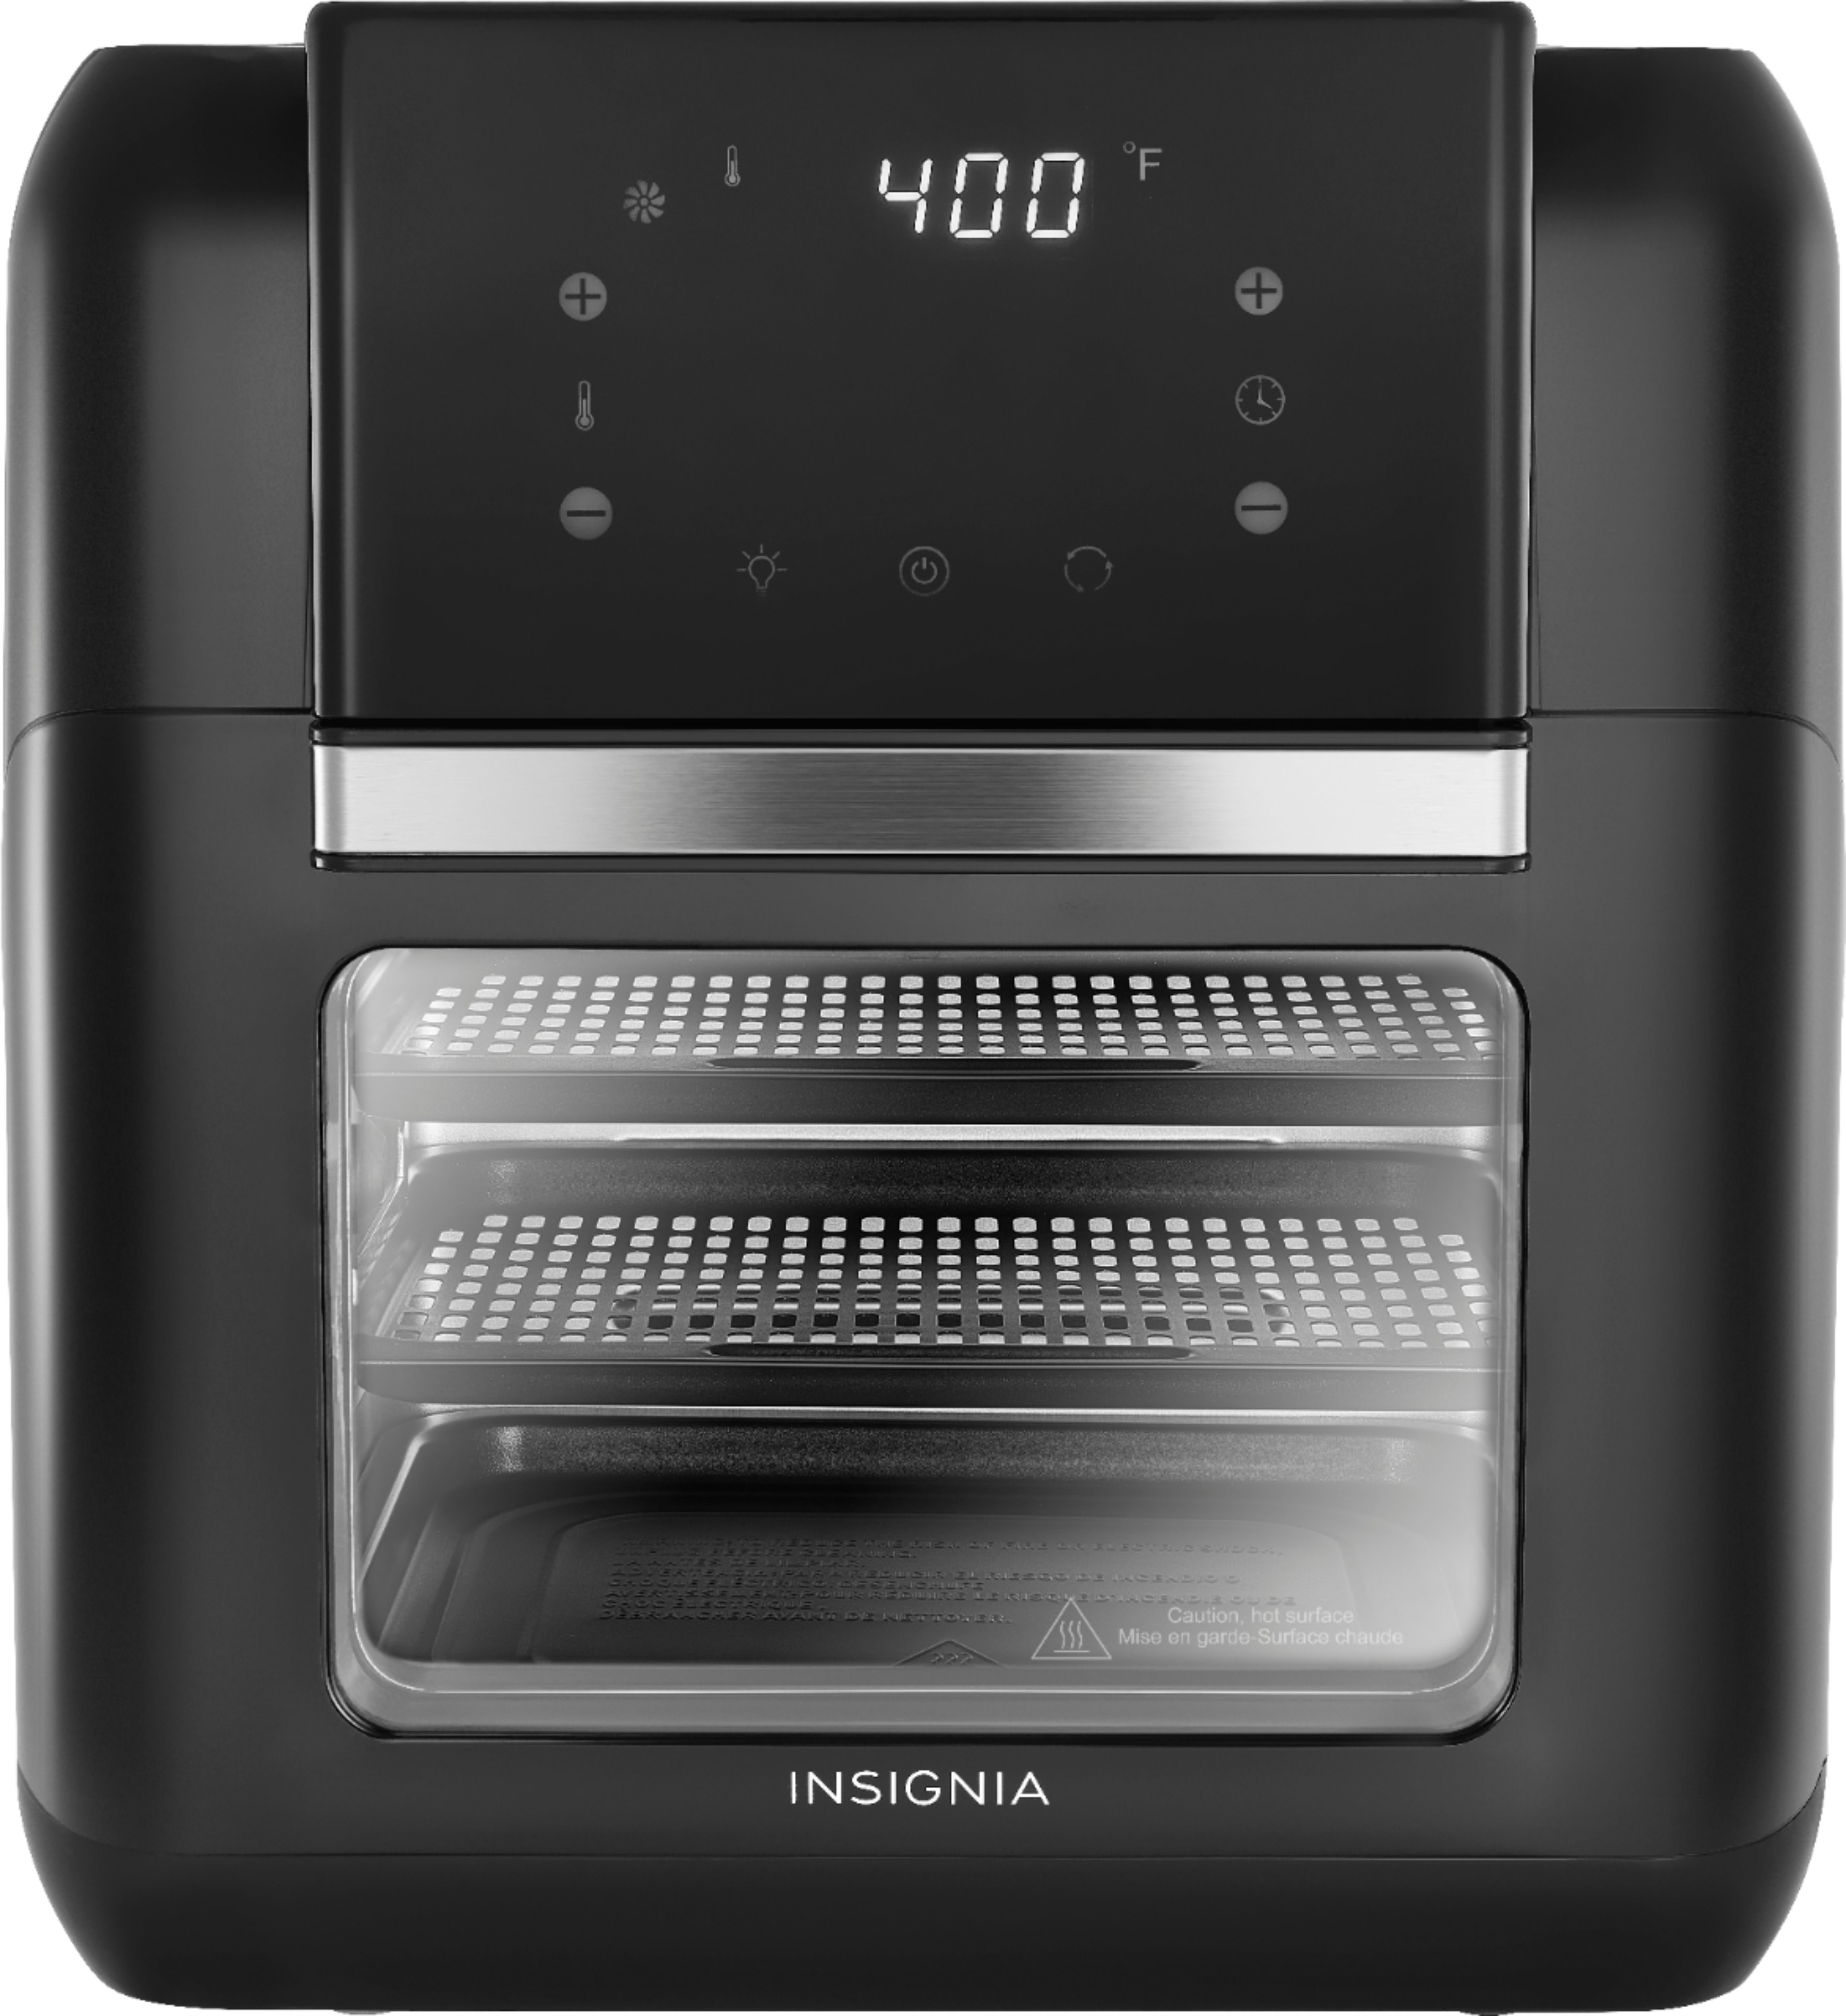 Insignia 10 Qt. Digital Air Fryer Oven - Black $69.99